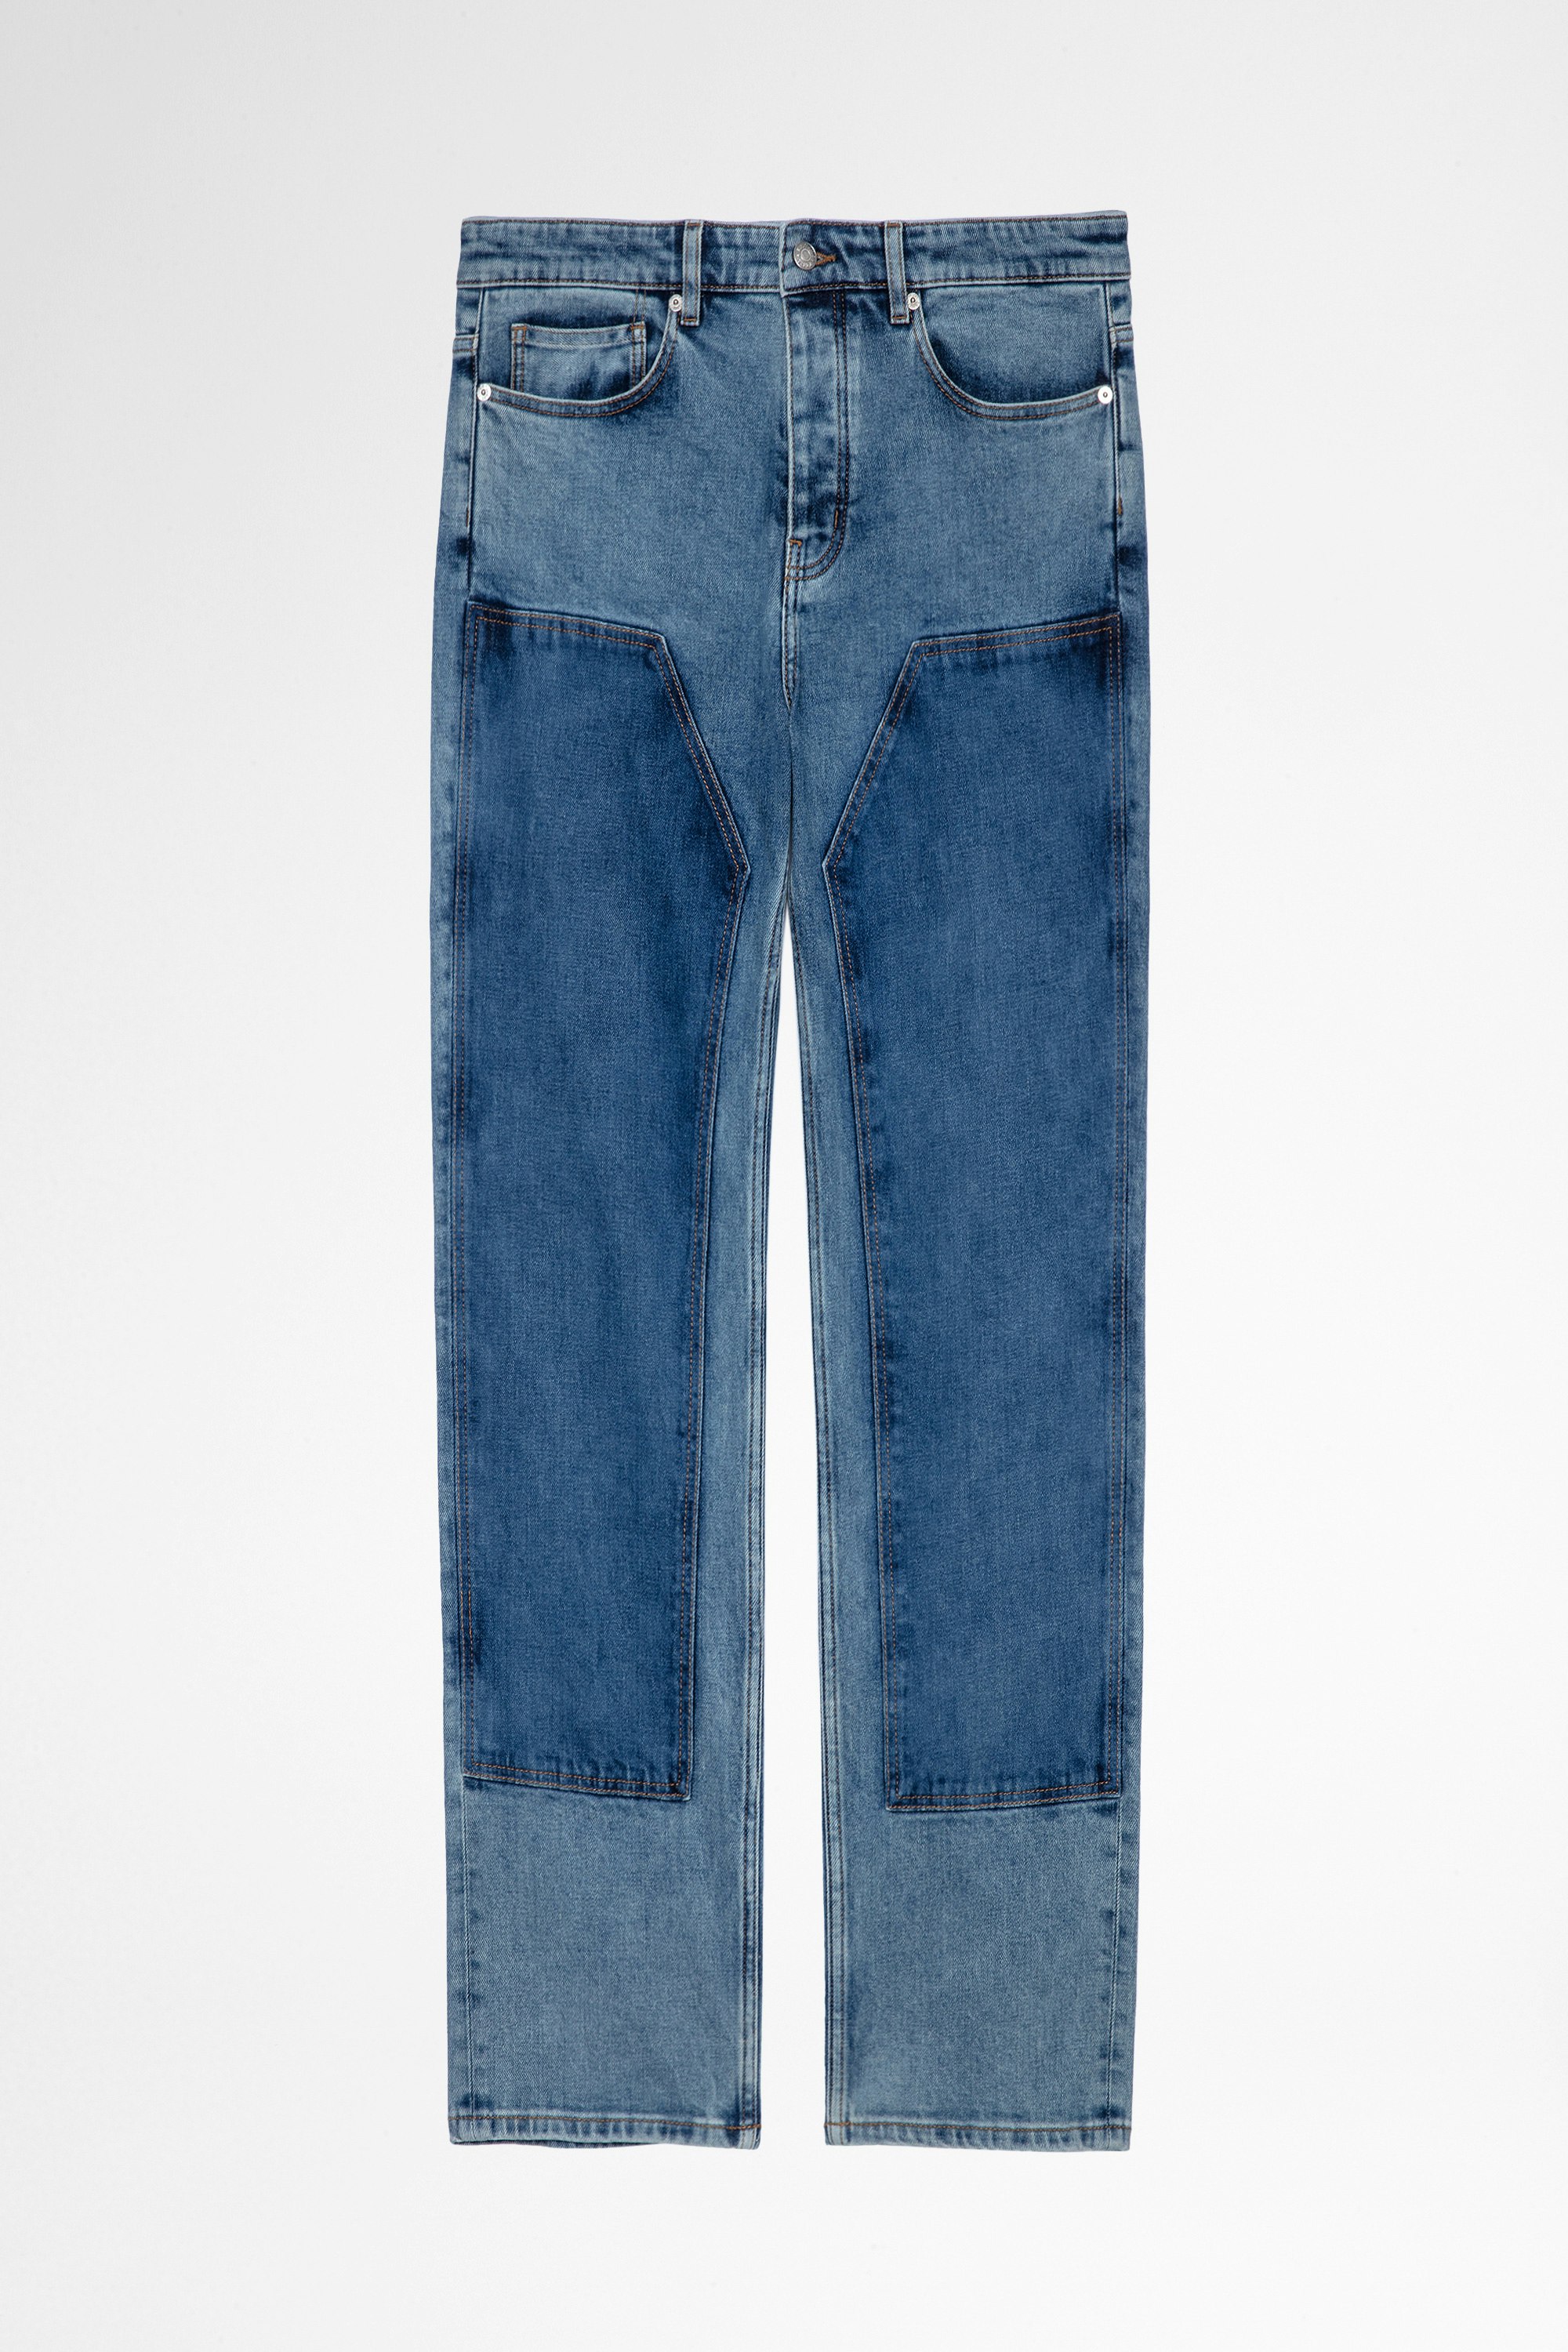 Jeans John Jeans in denim blu a contrasto uomo